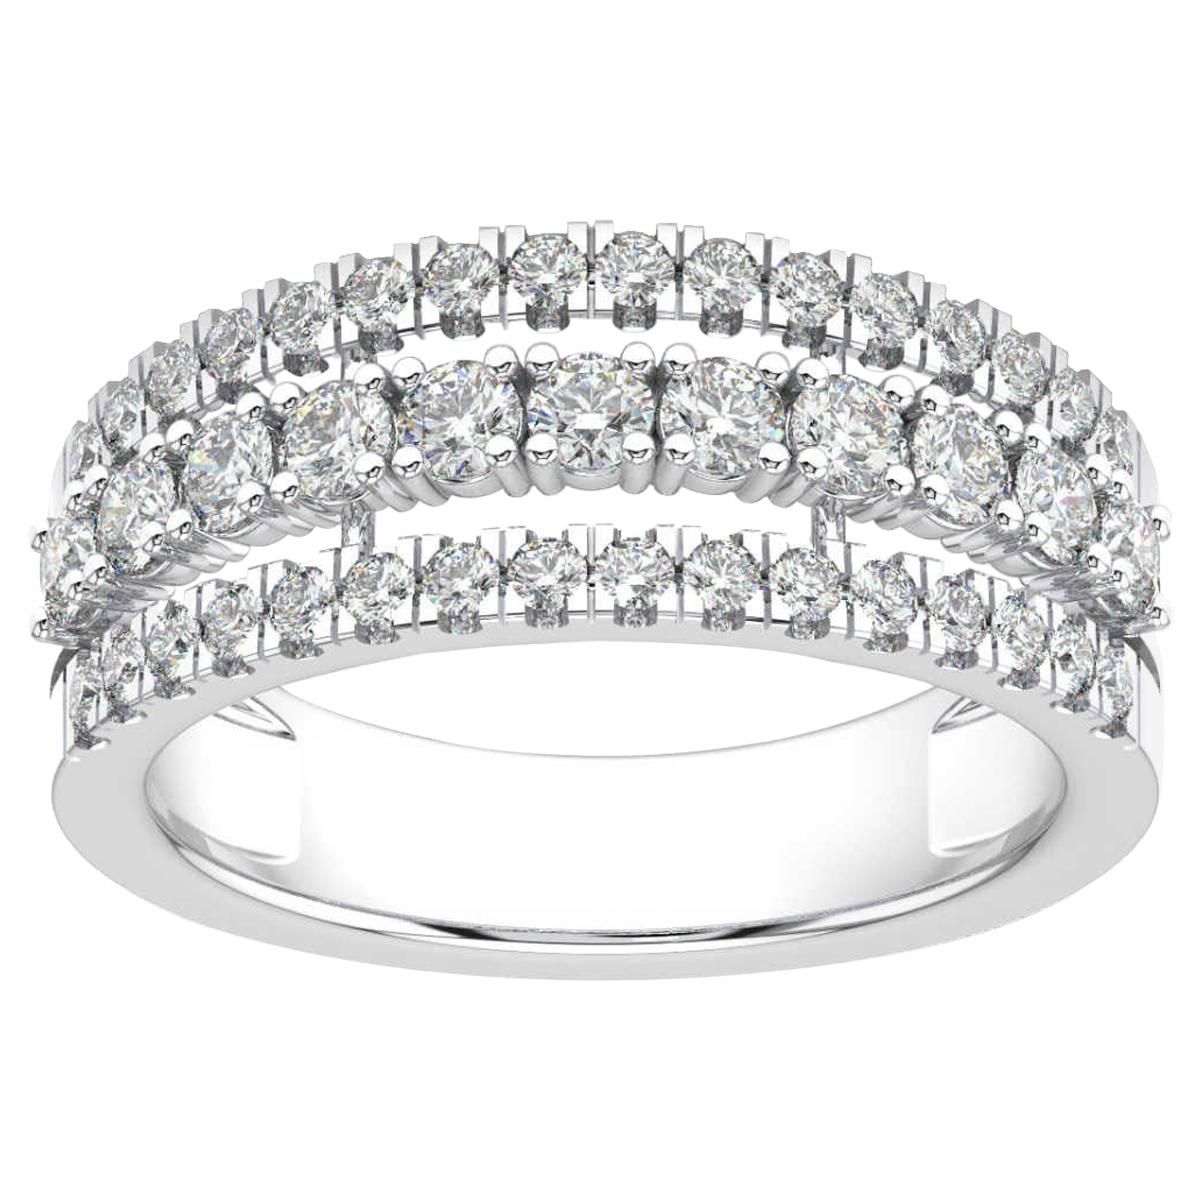 14 Karat White Gold Vega Fashion Diamond Ring '1 Carat'